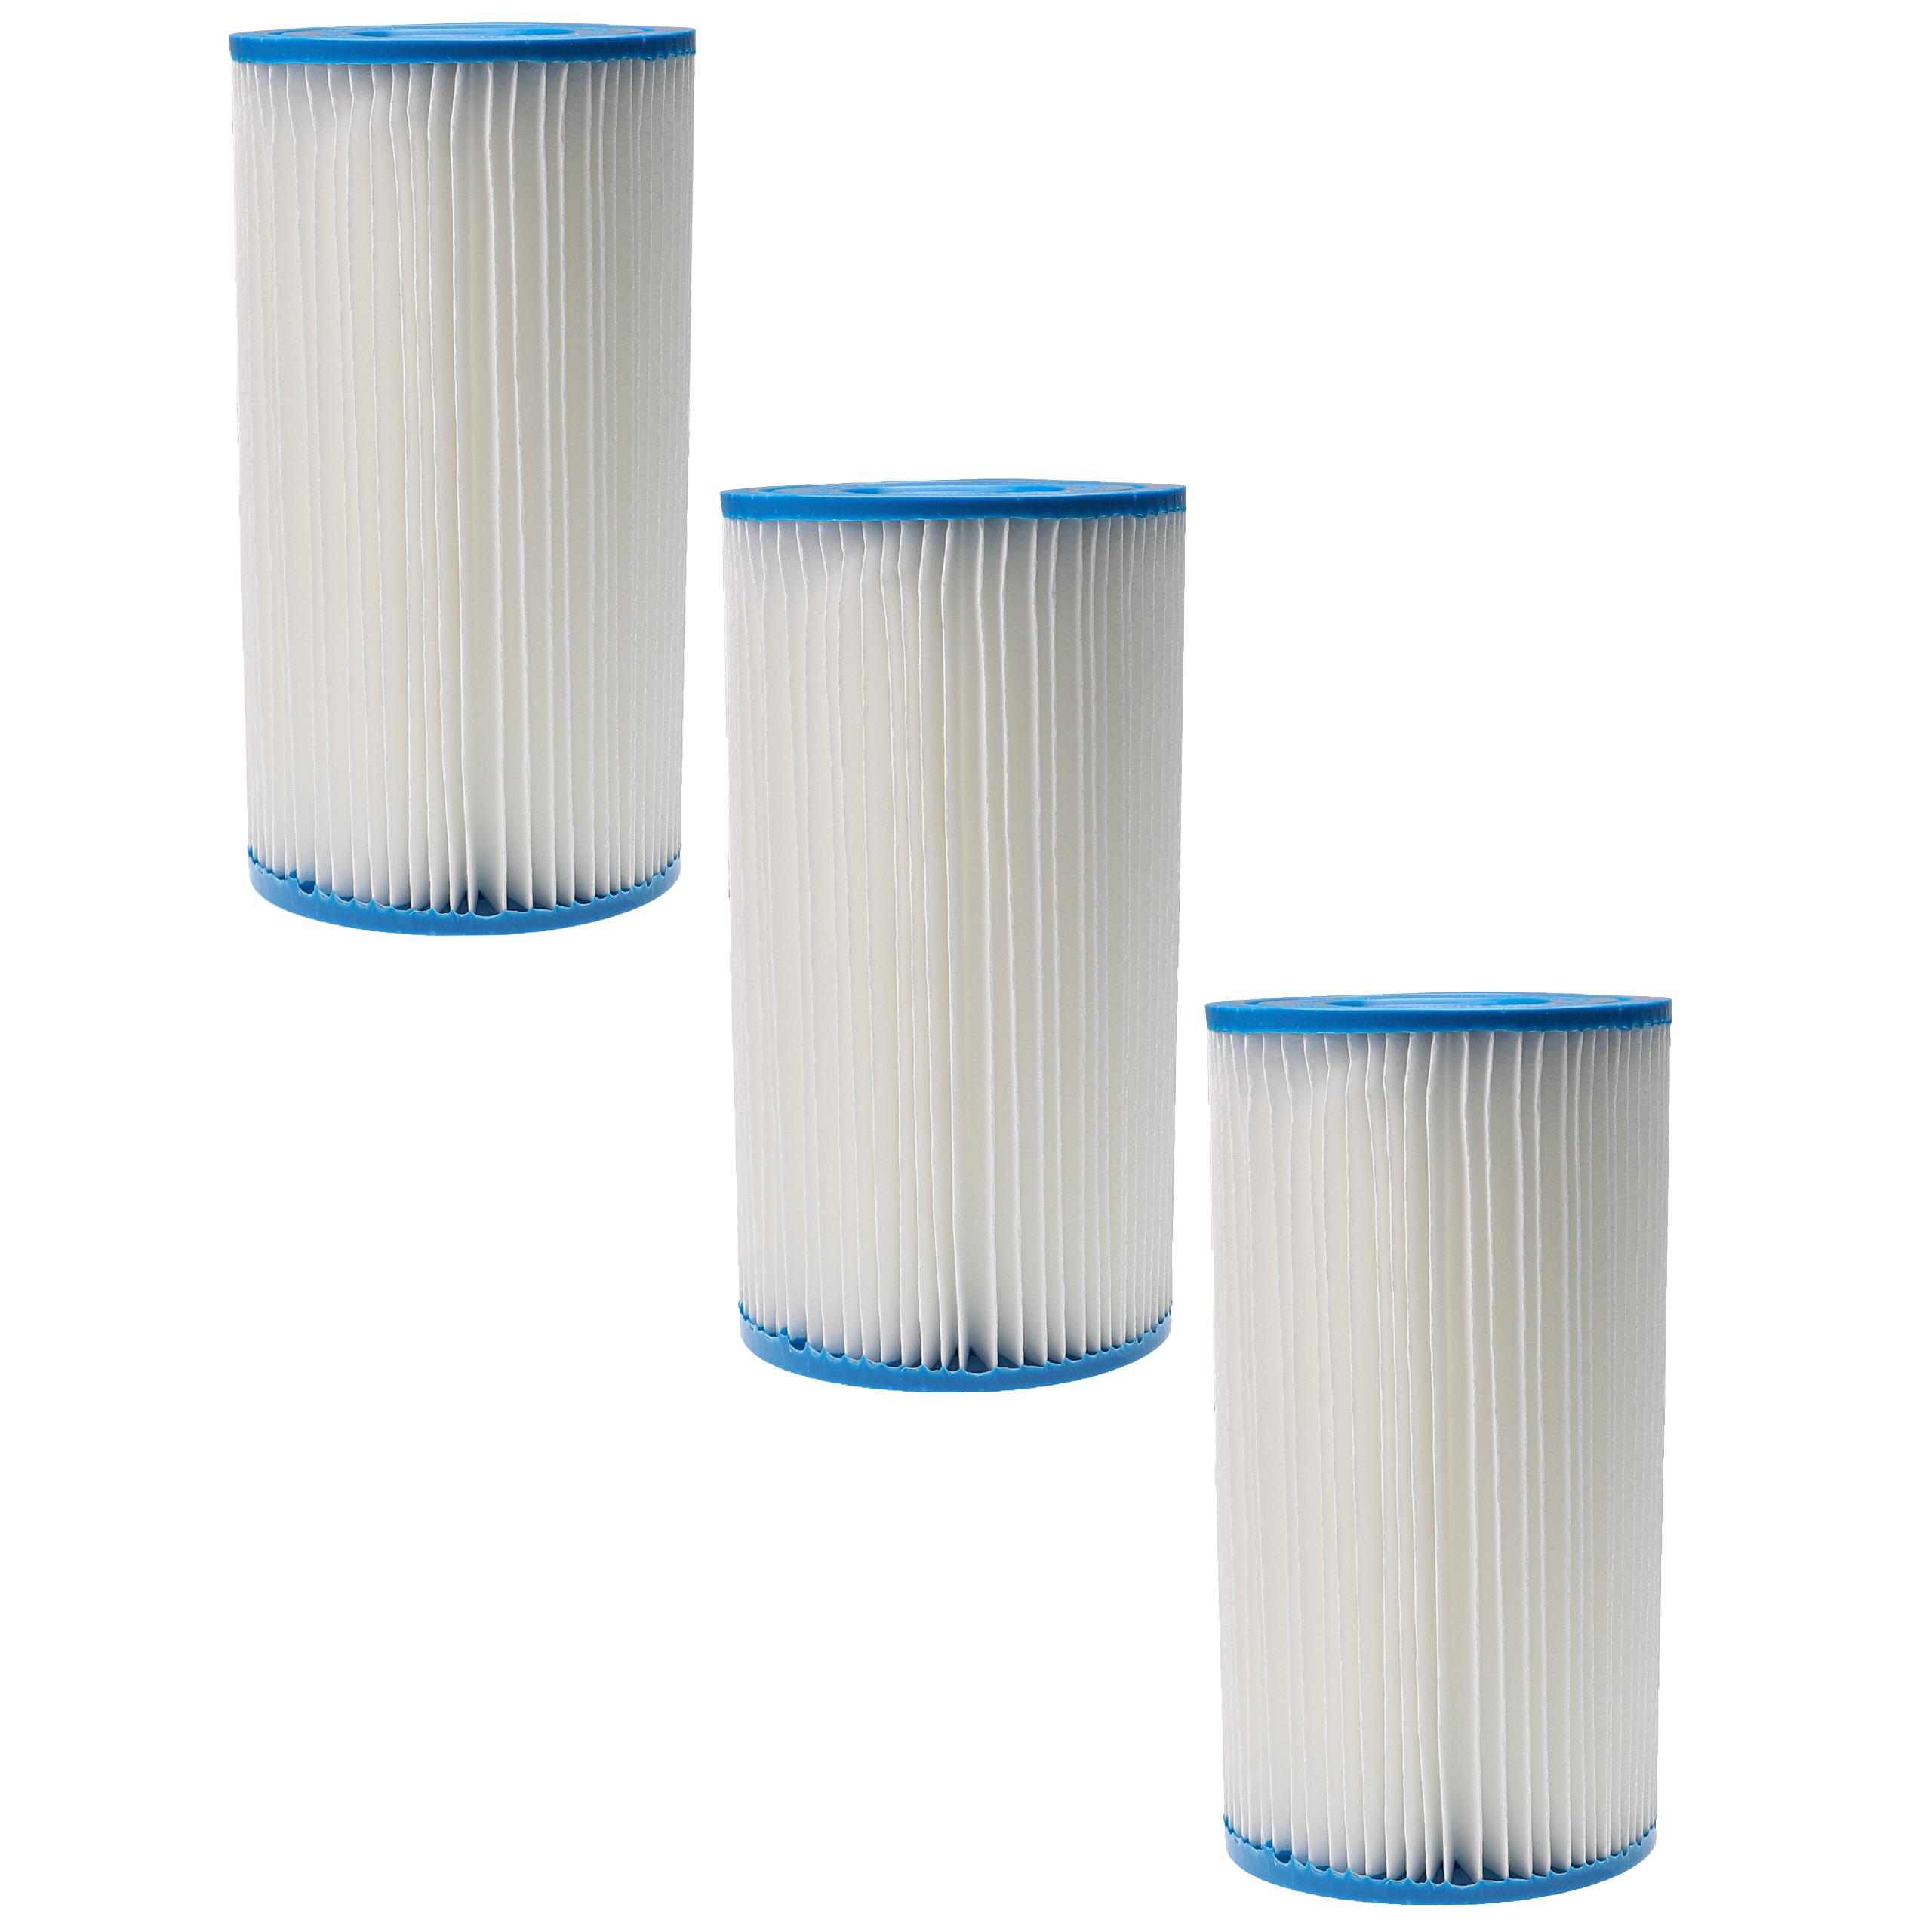 3x filtro de agua reemplaza Intex filtro tipo A para piscina y bomba de filtro Intex - Cartucho de filtro